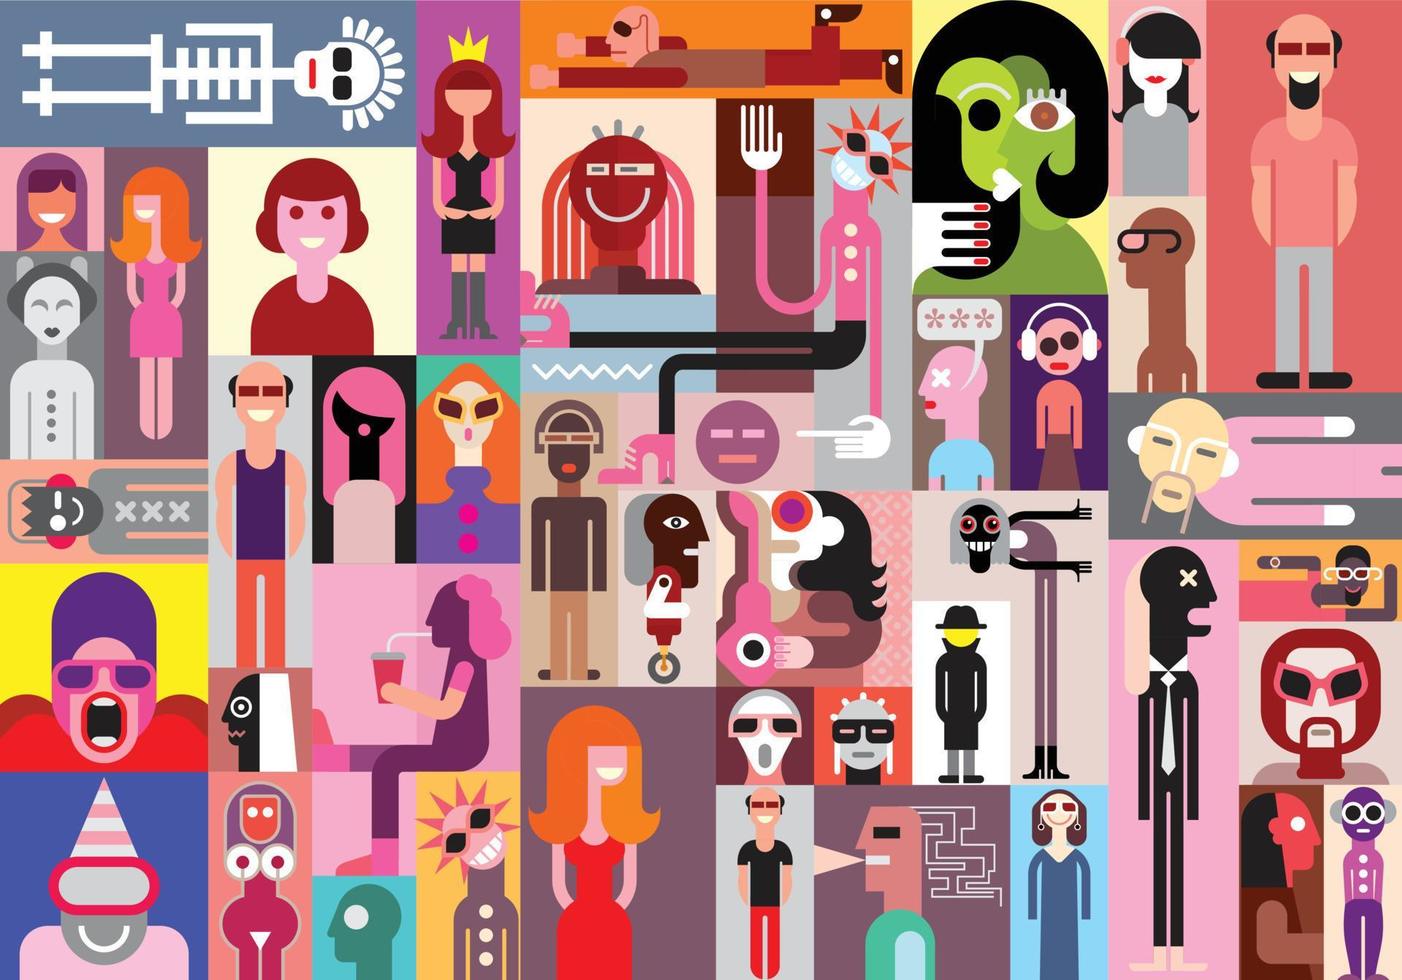 collage de arte pop de personas vector